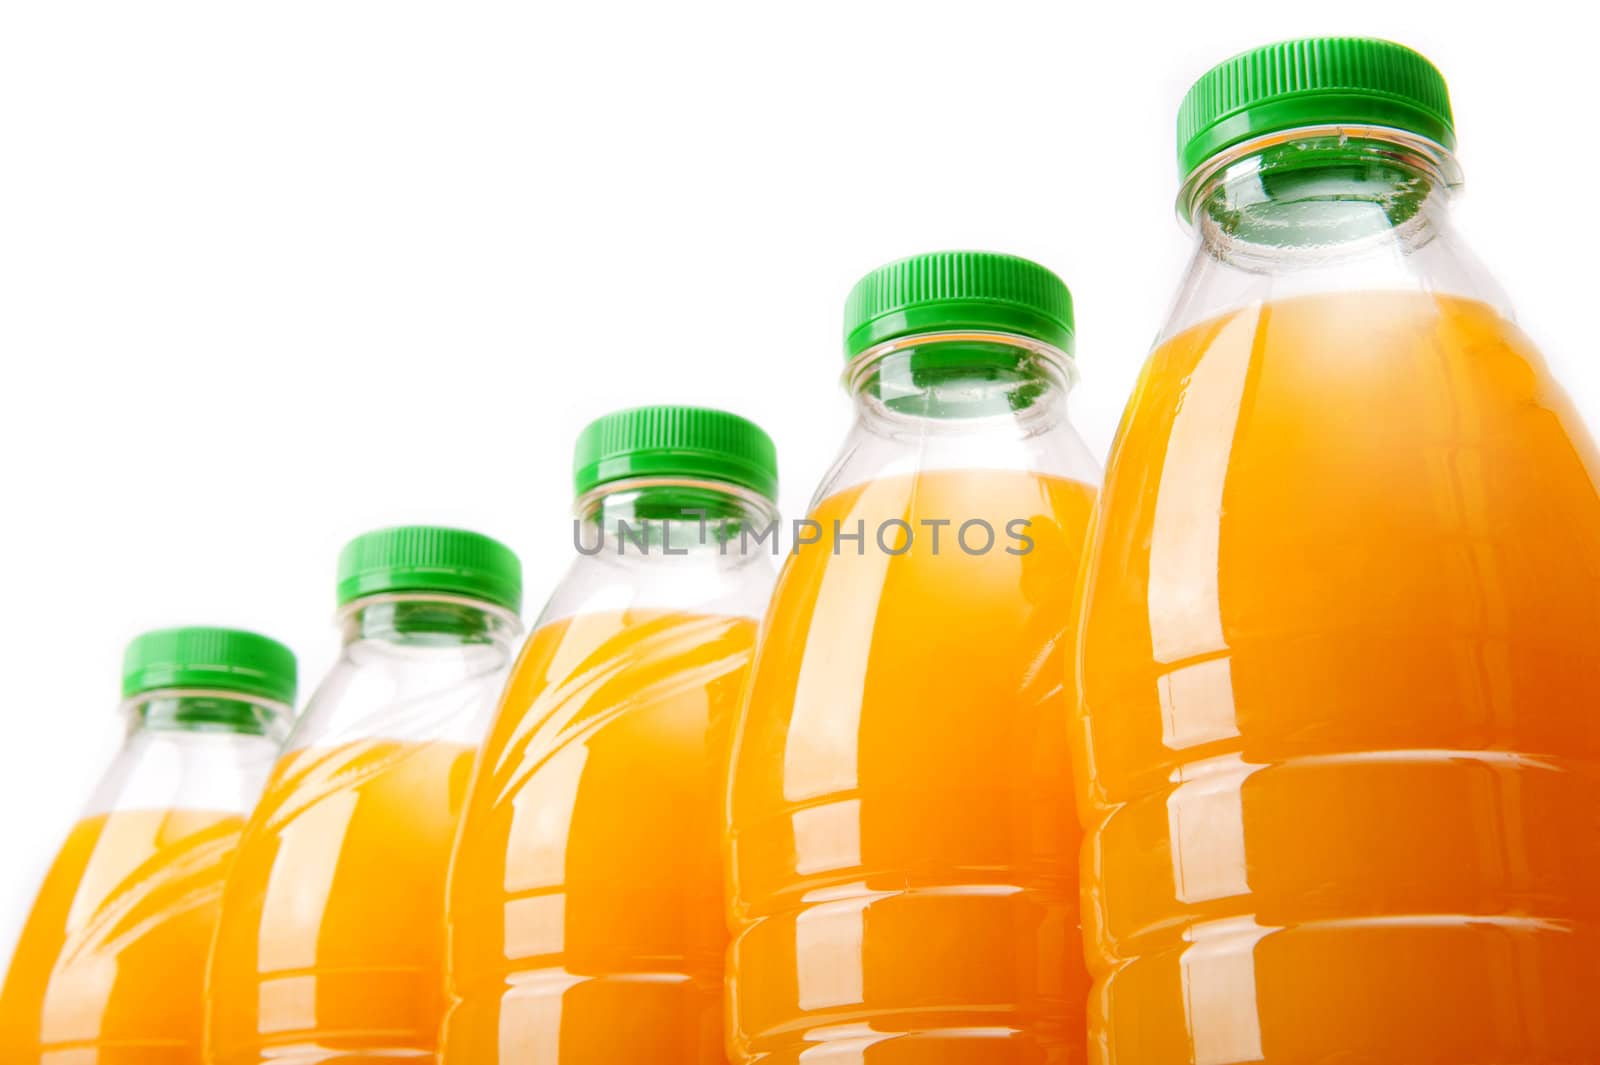 Bottles with fresh orange juice on white background